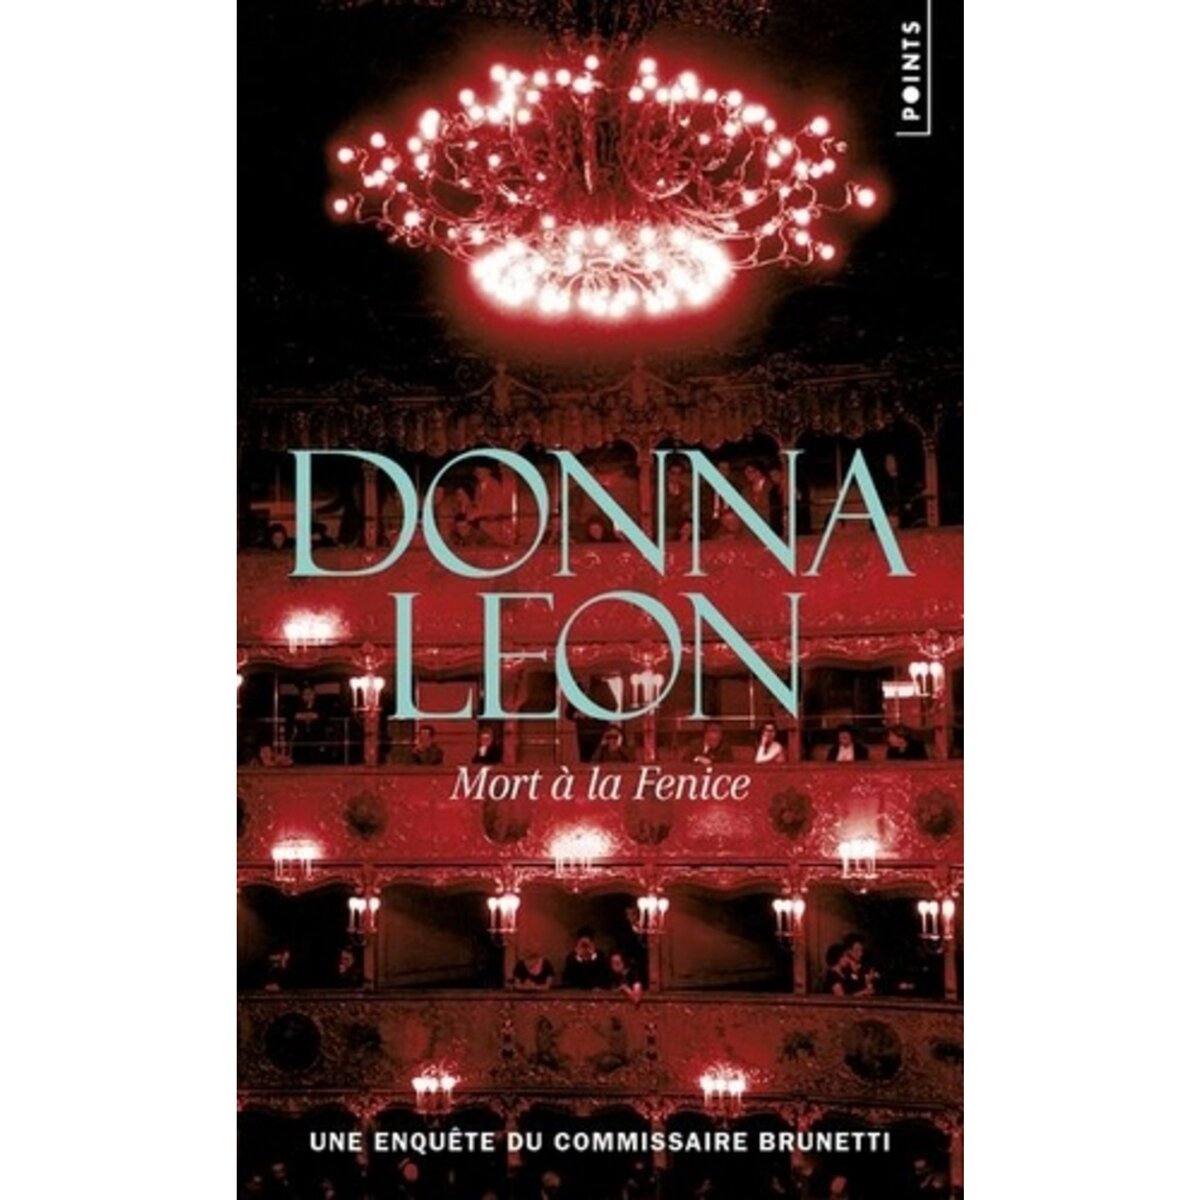  MORT A LA FENICE, Leon Donna